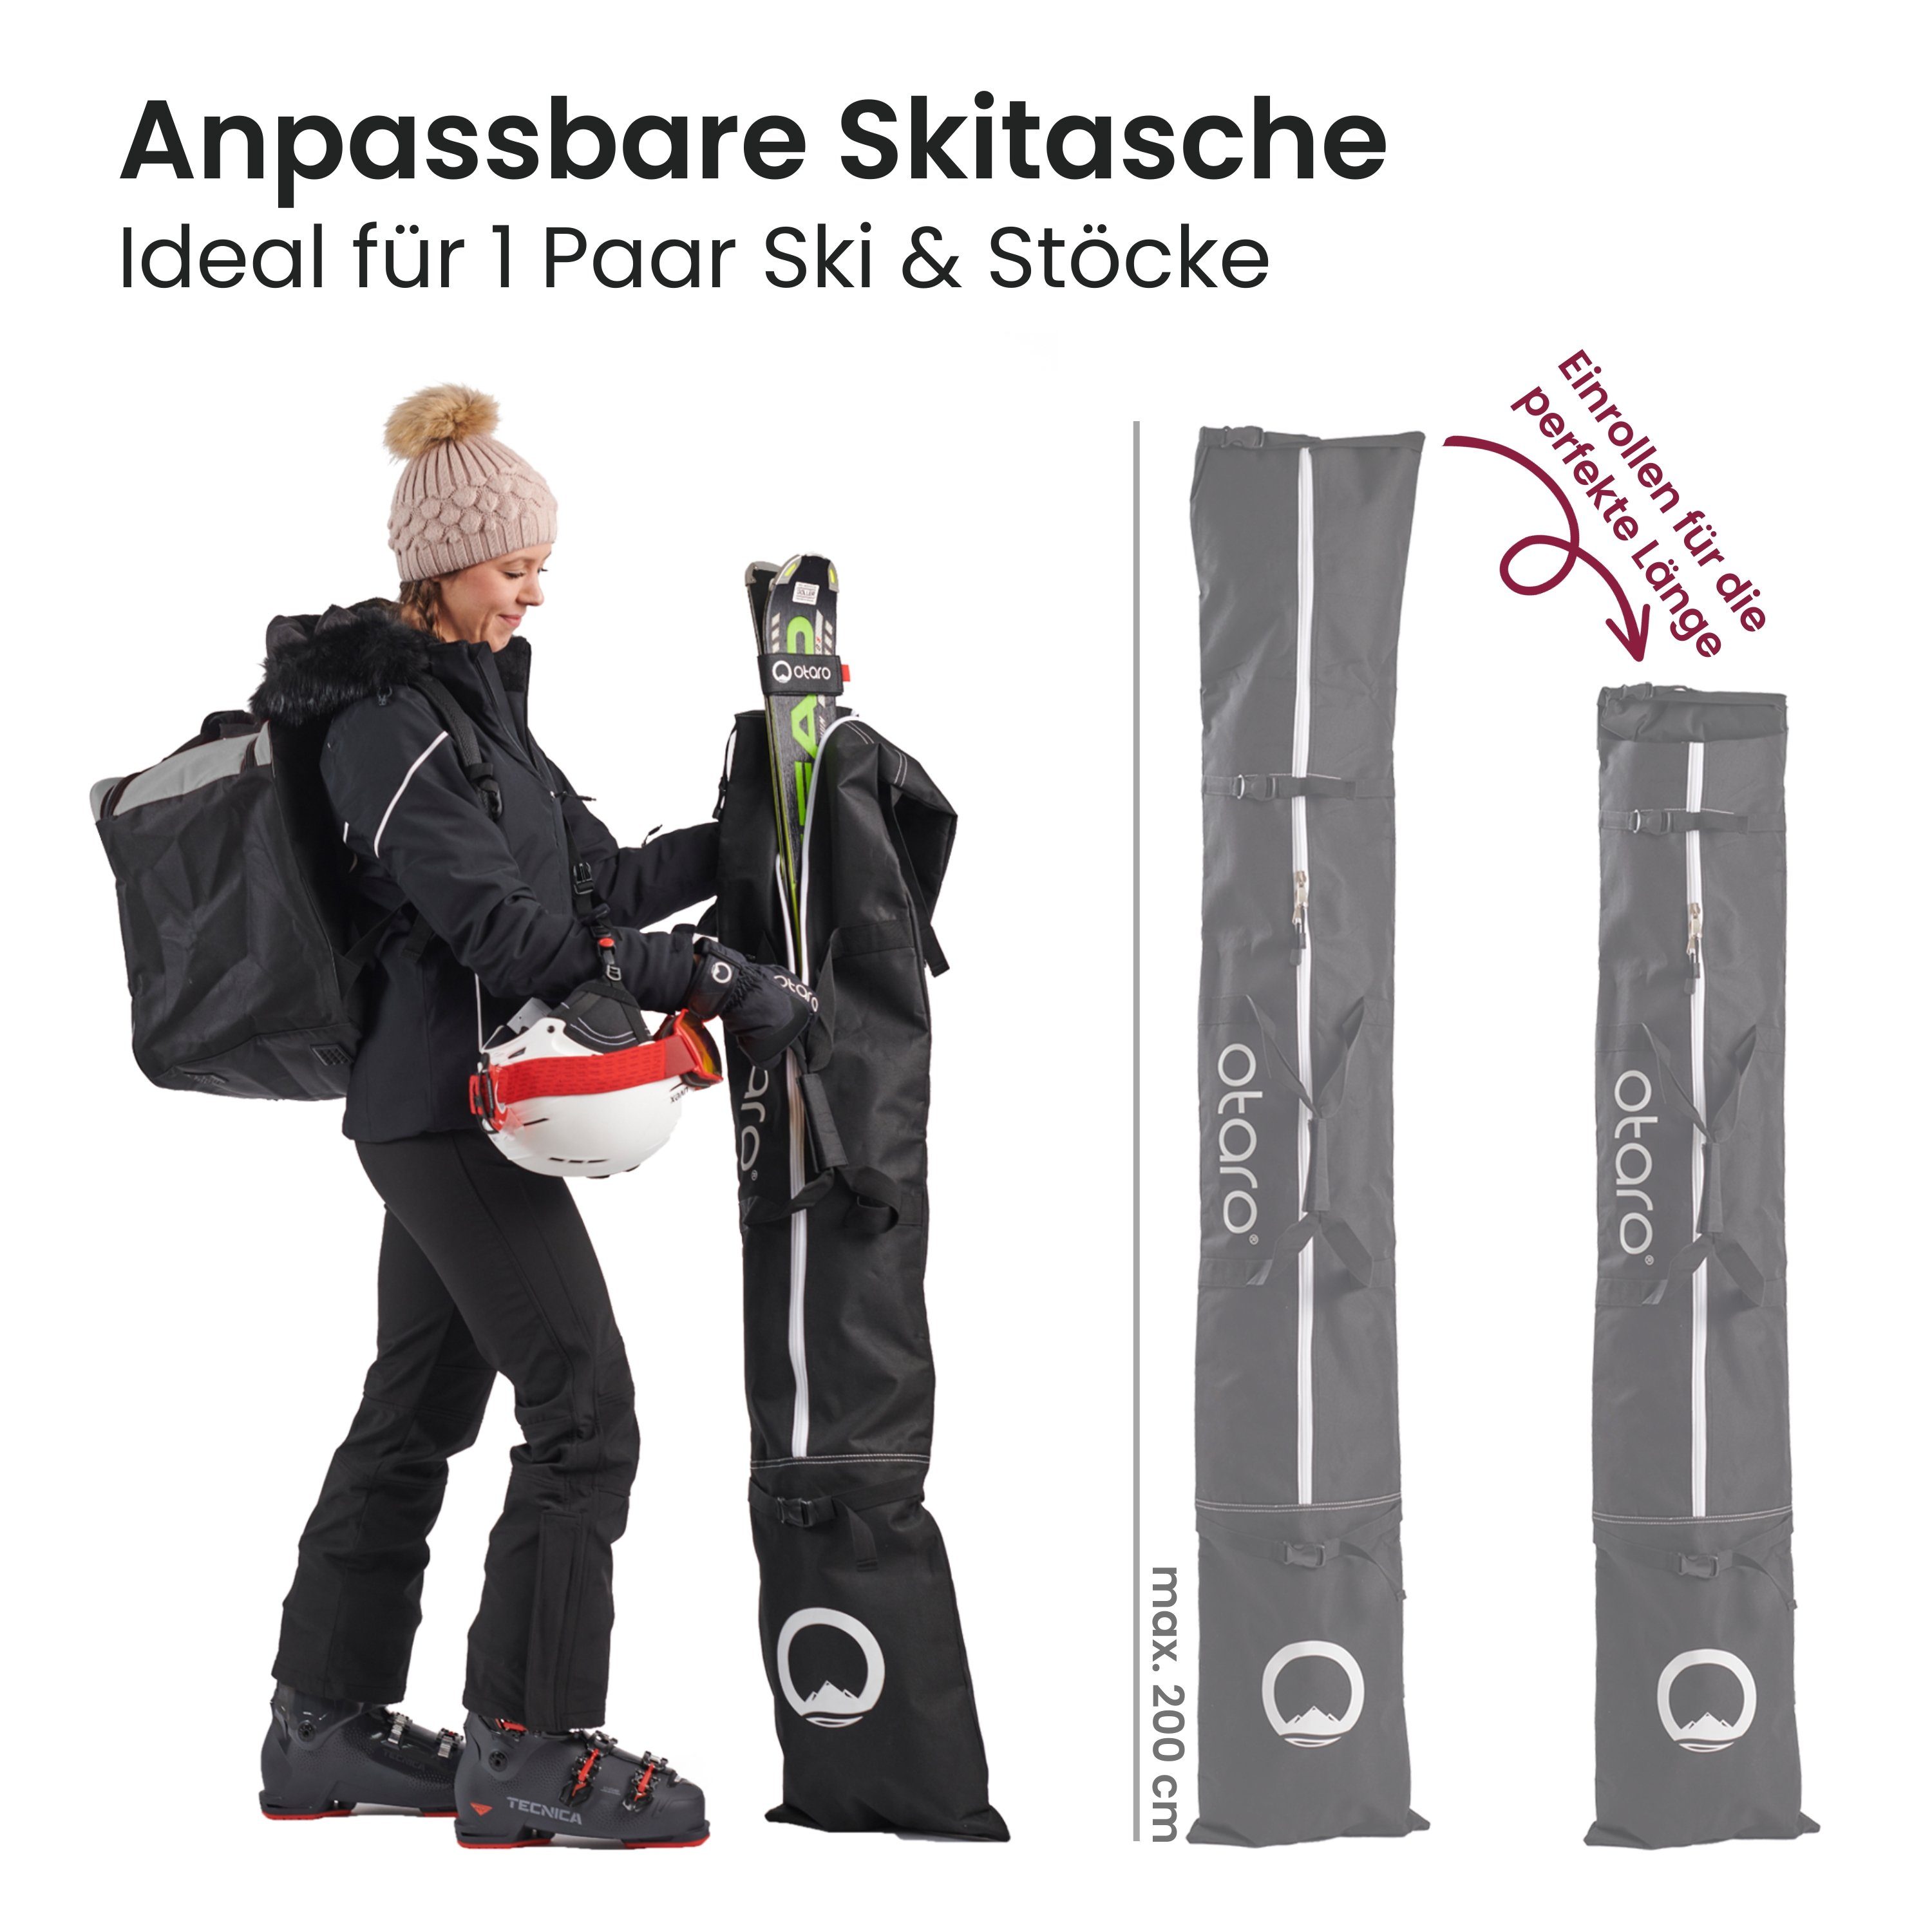 für Standfläche, für Schwarz Skitasche, Set: Ski für ausklappbare (Schutz durchdacht, 1 Ausrüstung, Paar Bordeauxrot & Skischuhtasche Paar Pro-Set Stöcke) 1 + Sporttasche deine Ski Otaro Perfekt